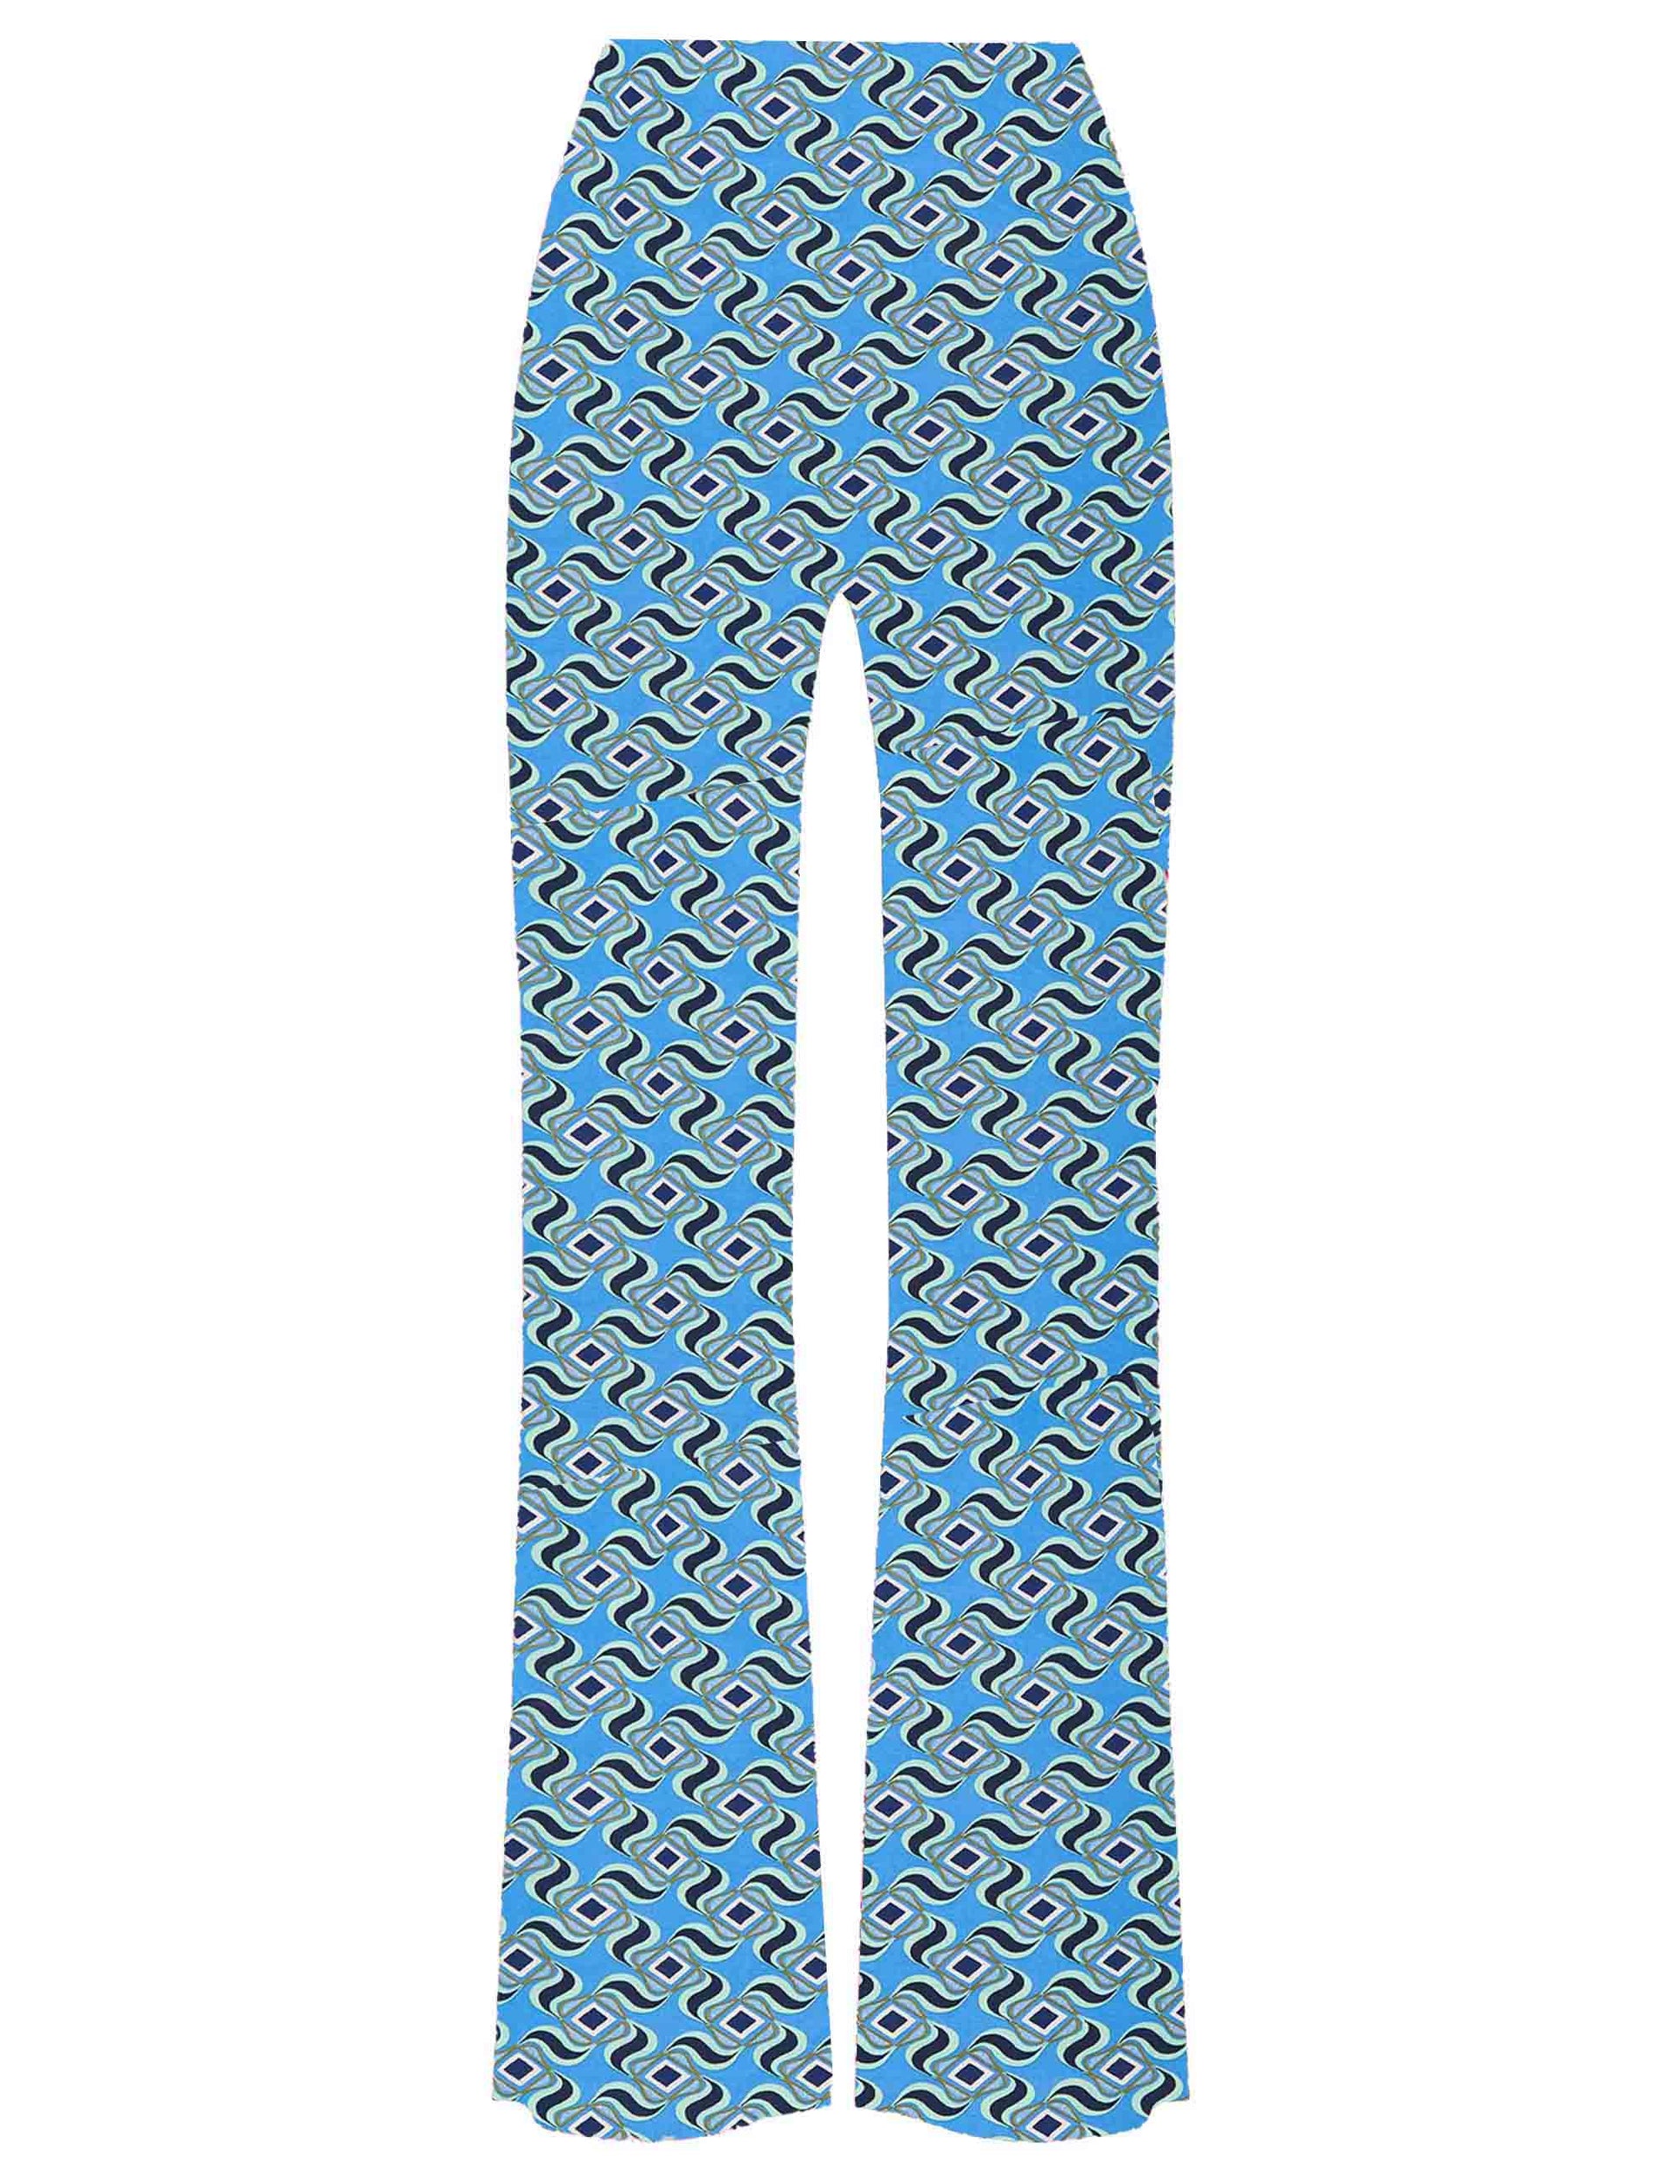 Swirl Print women's trousers in patterned light blue stretch jersey